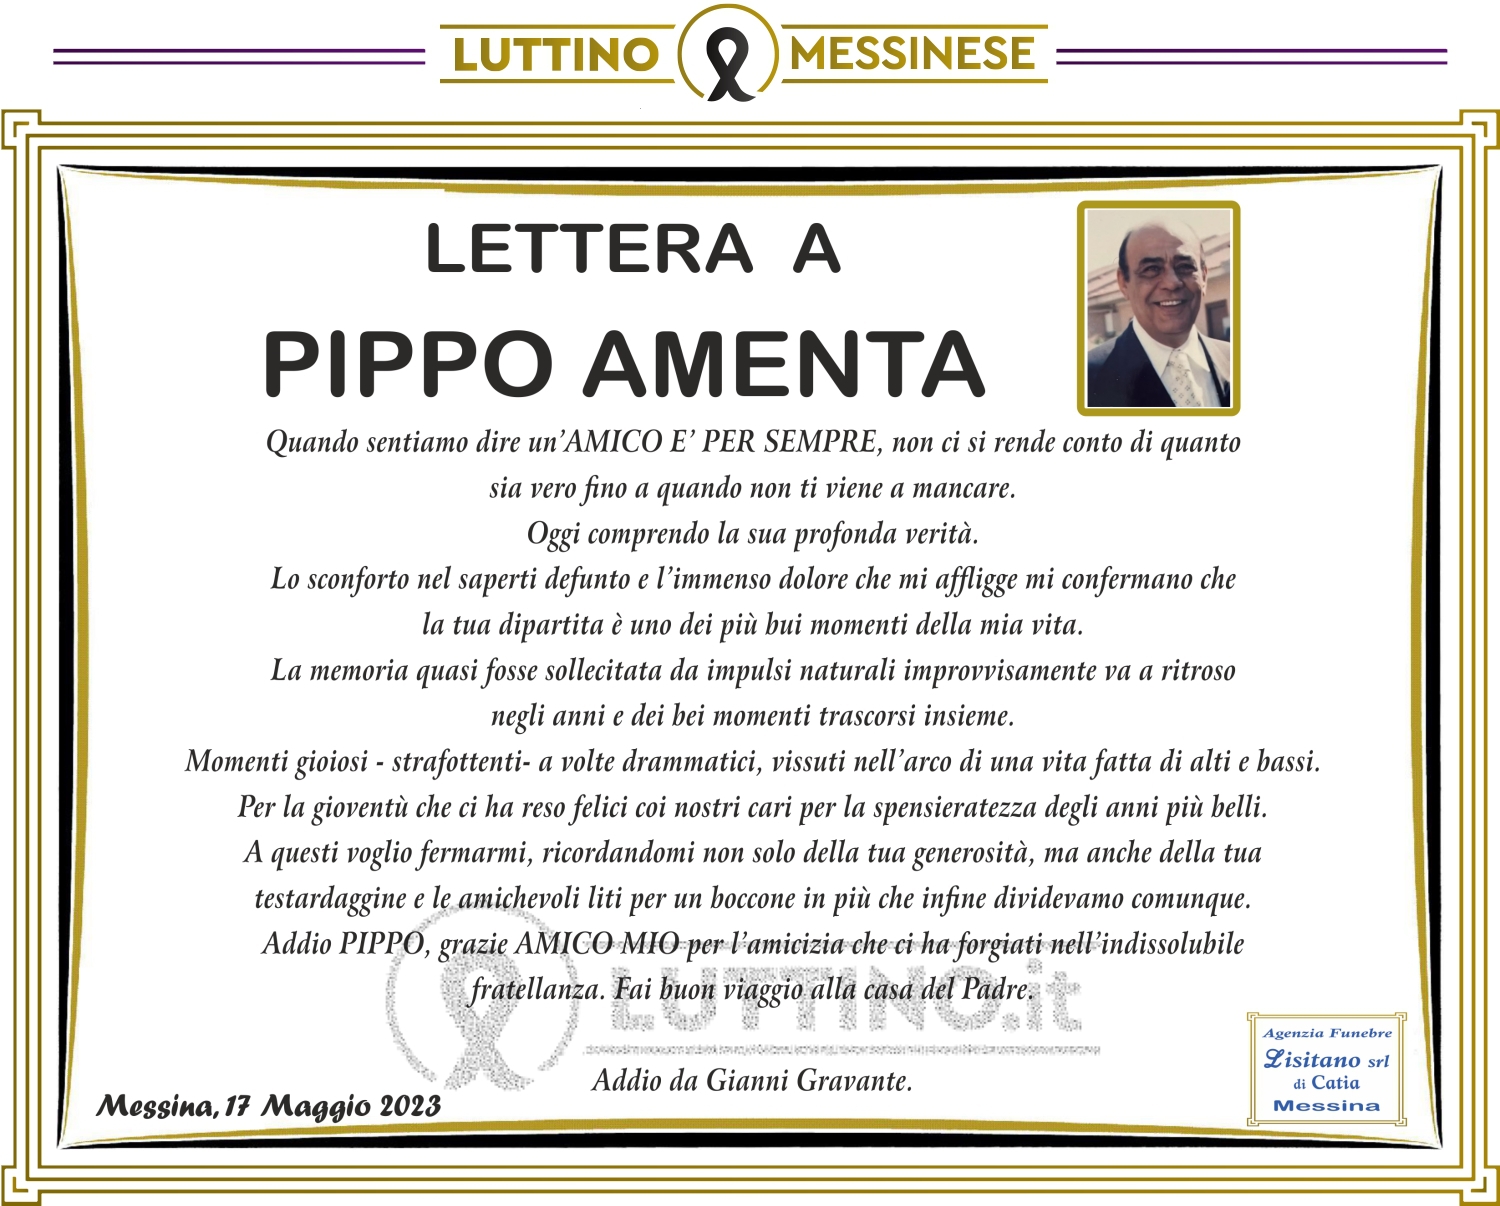 Giuseppe Amenta